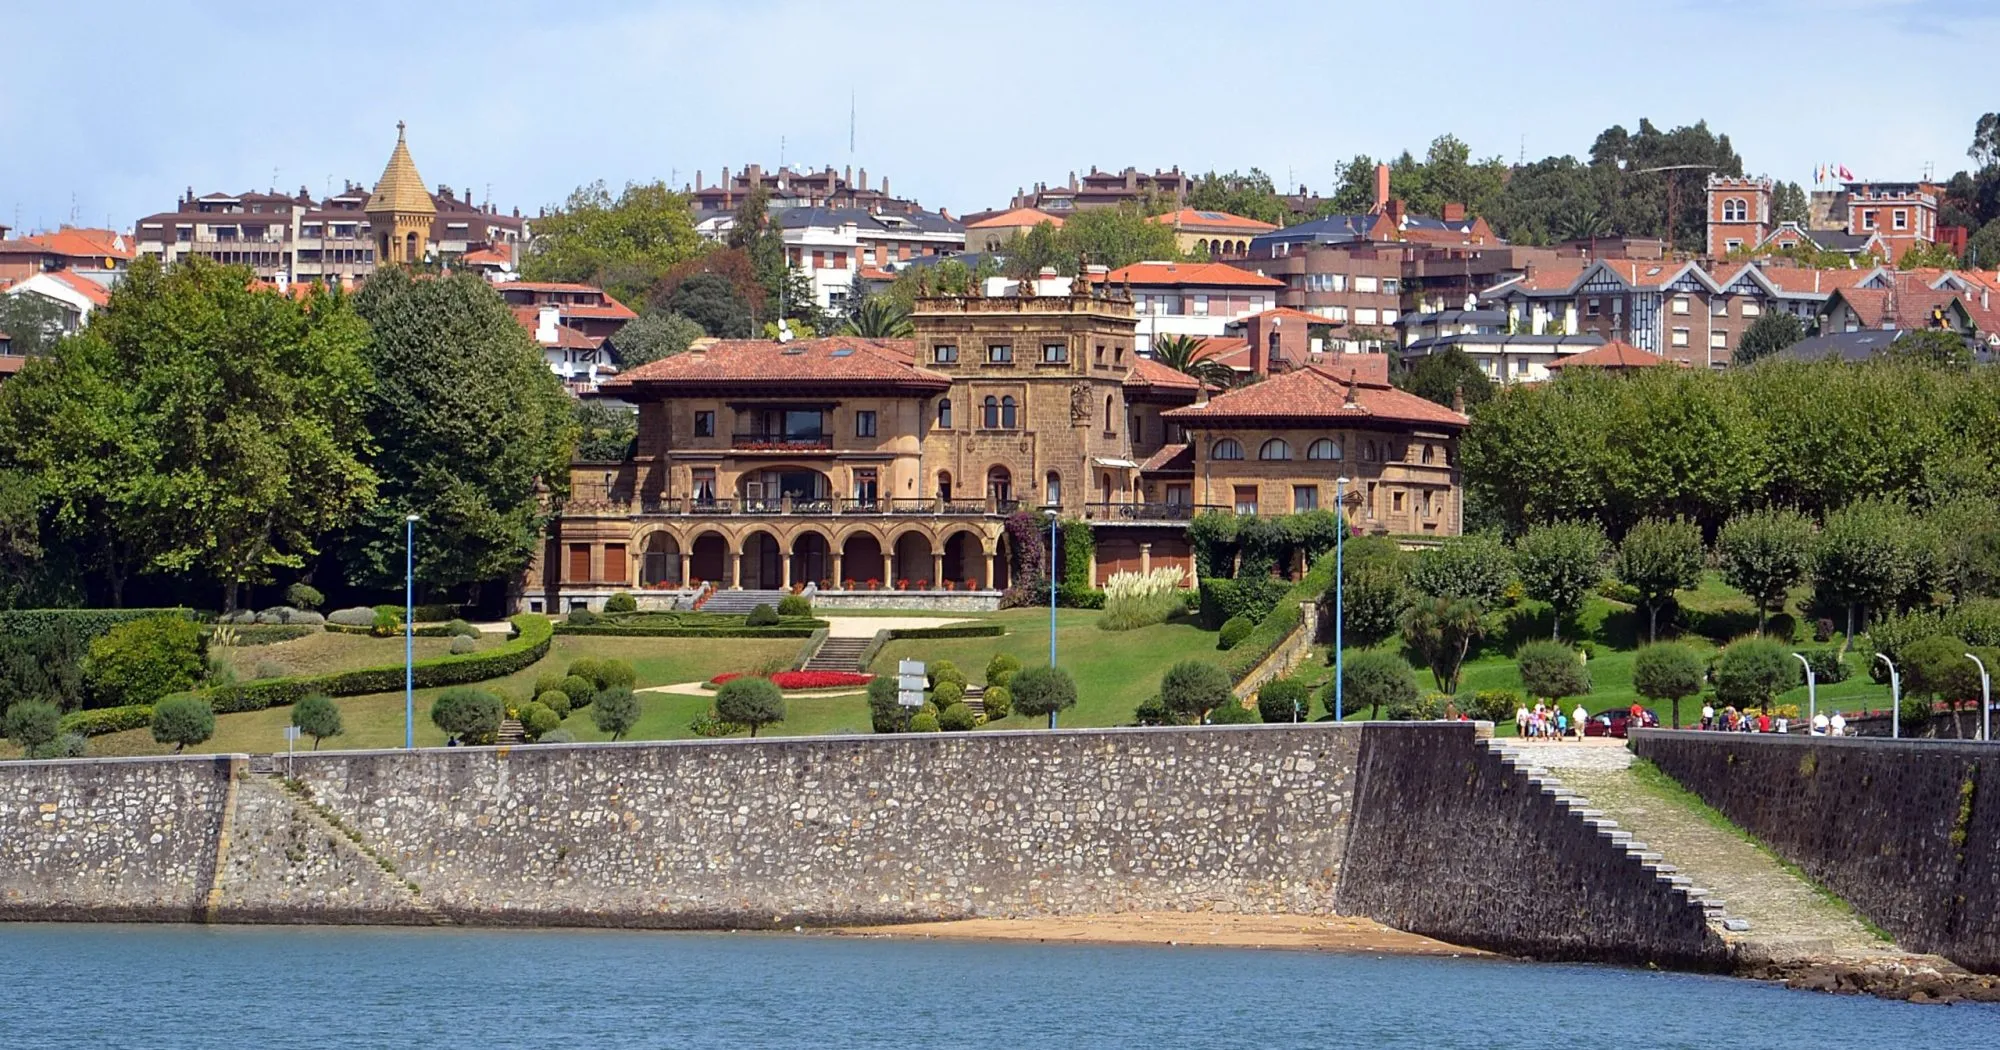 Lezama-Leguizamon Palace, Getxo, Basque Country